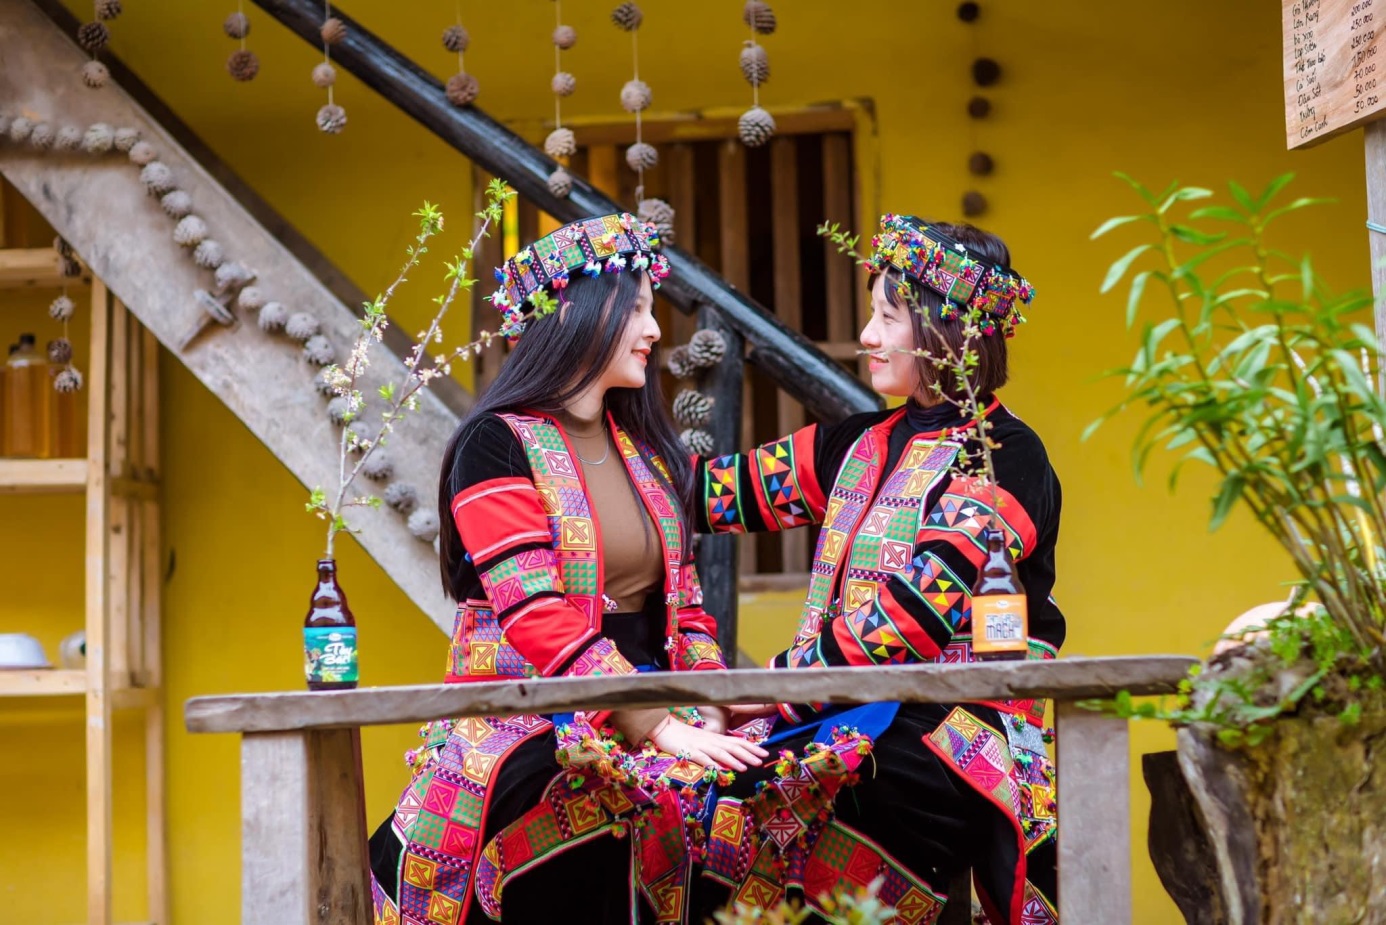 Lưu giữ và phát huy những giá trị làng văn hoá du lịch cộng đồng trong phát triển du lịch tỉnh Hà Giang